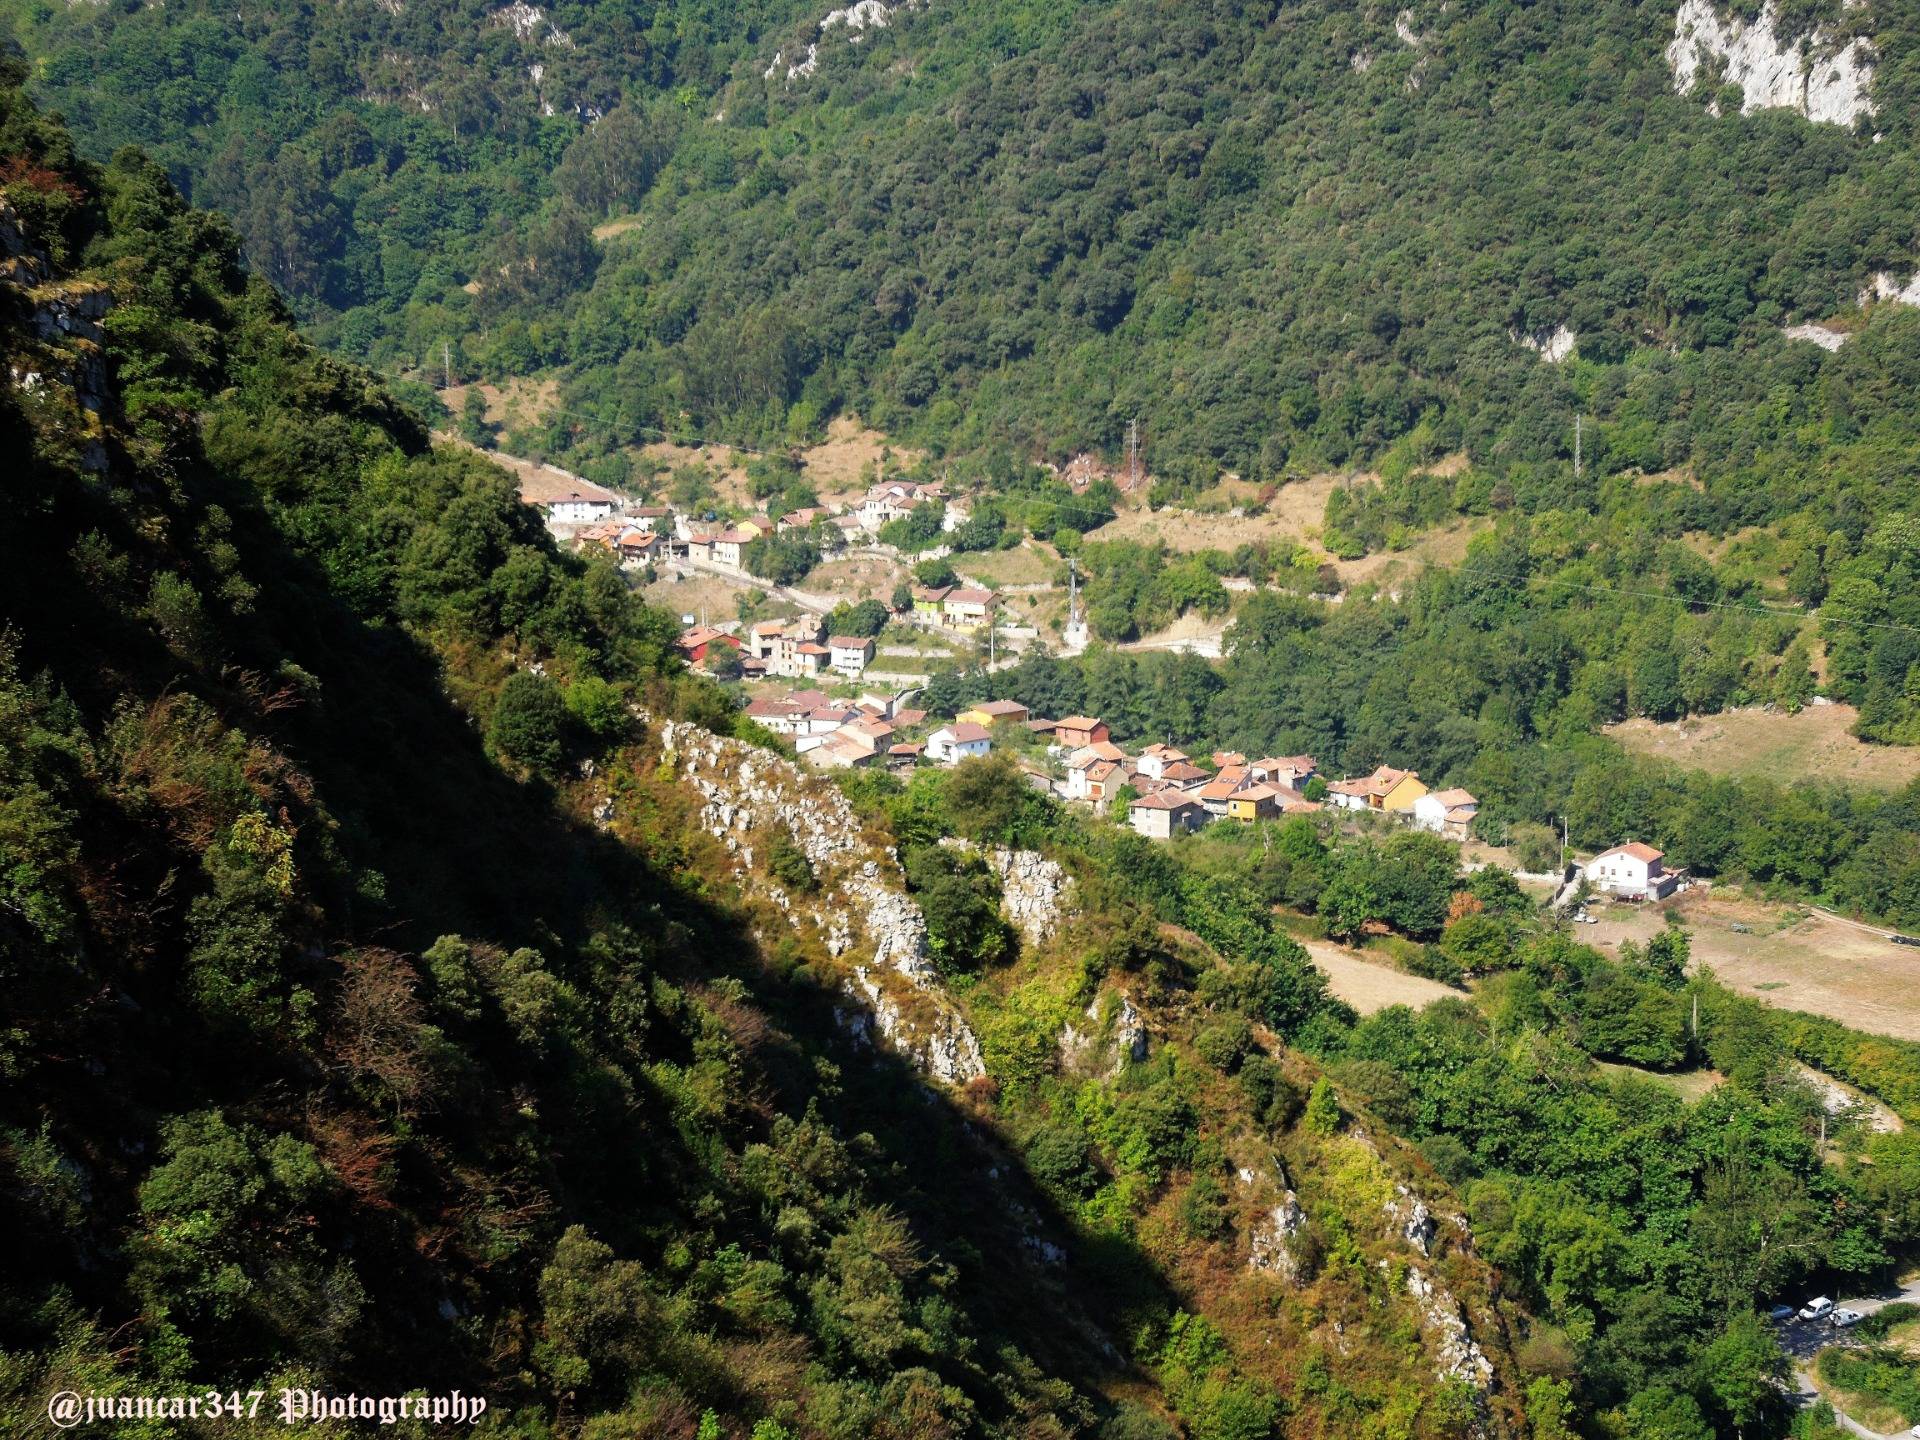 Mythological Asturias trails: the Xanas Gorge